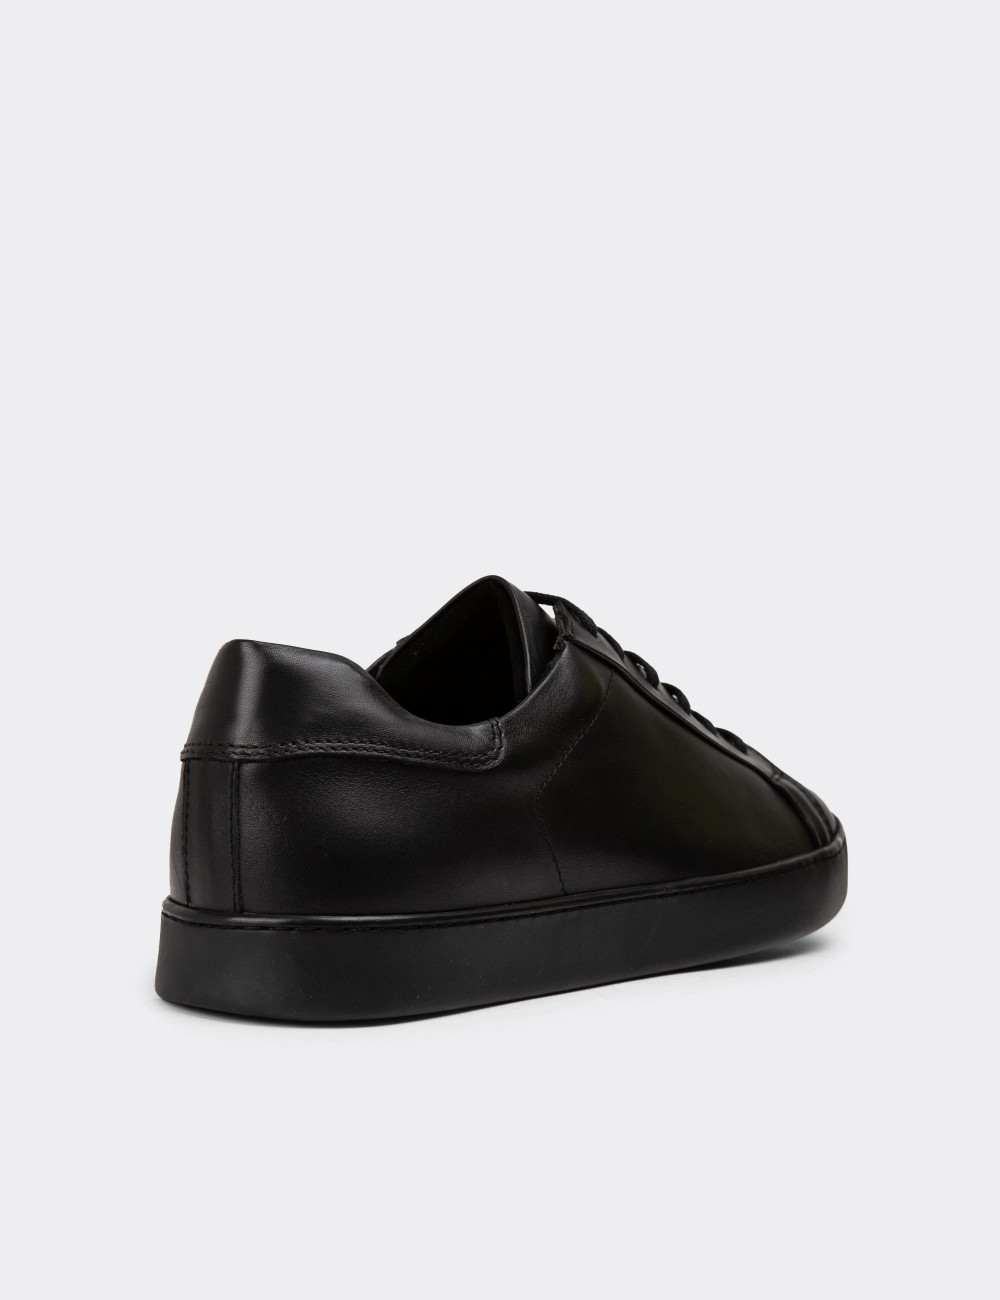 Hakiki Deri Siyah Erkek Sneaker Ayakkabı - 01955MSYHC01